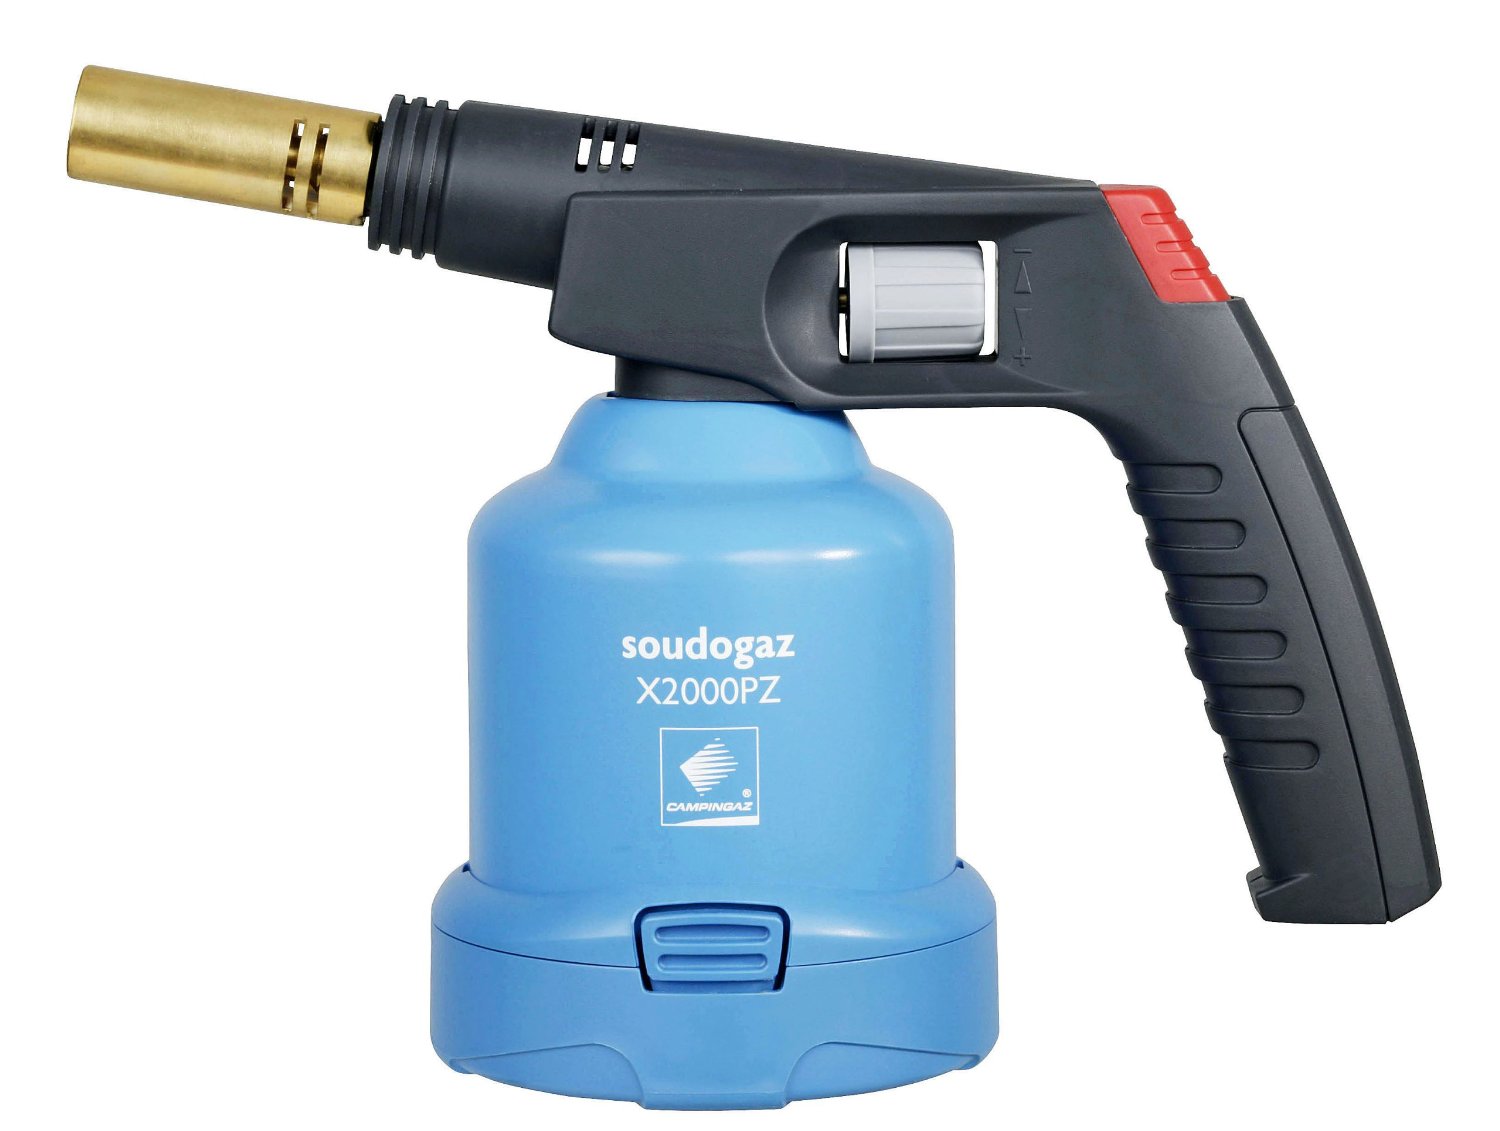 CAMPINGAZ Soudogaz® X 2000PZ Pierceable Cartridge Blowlamps - Click Image to Close